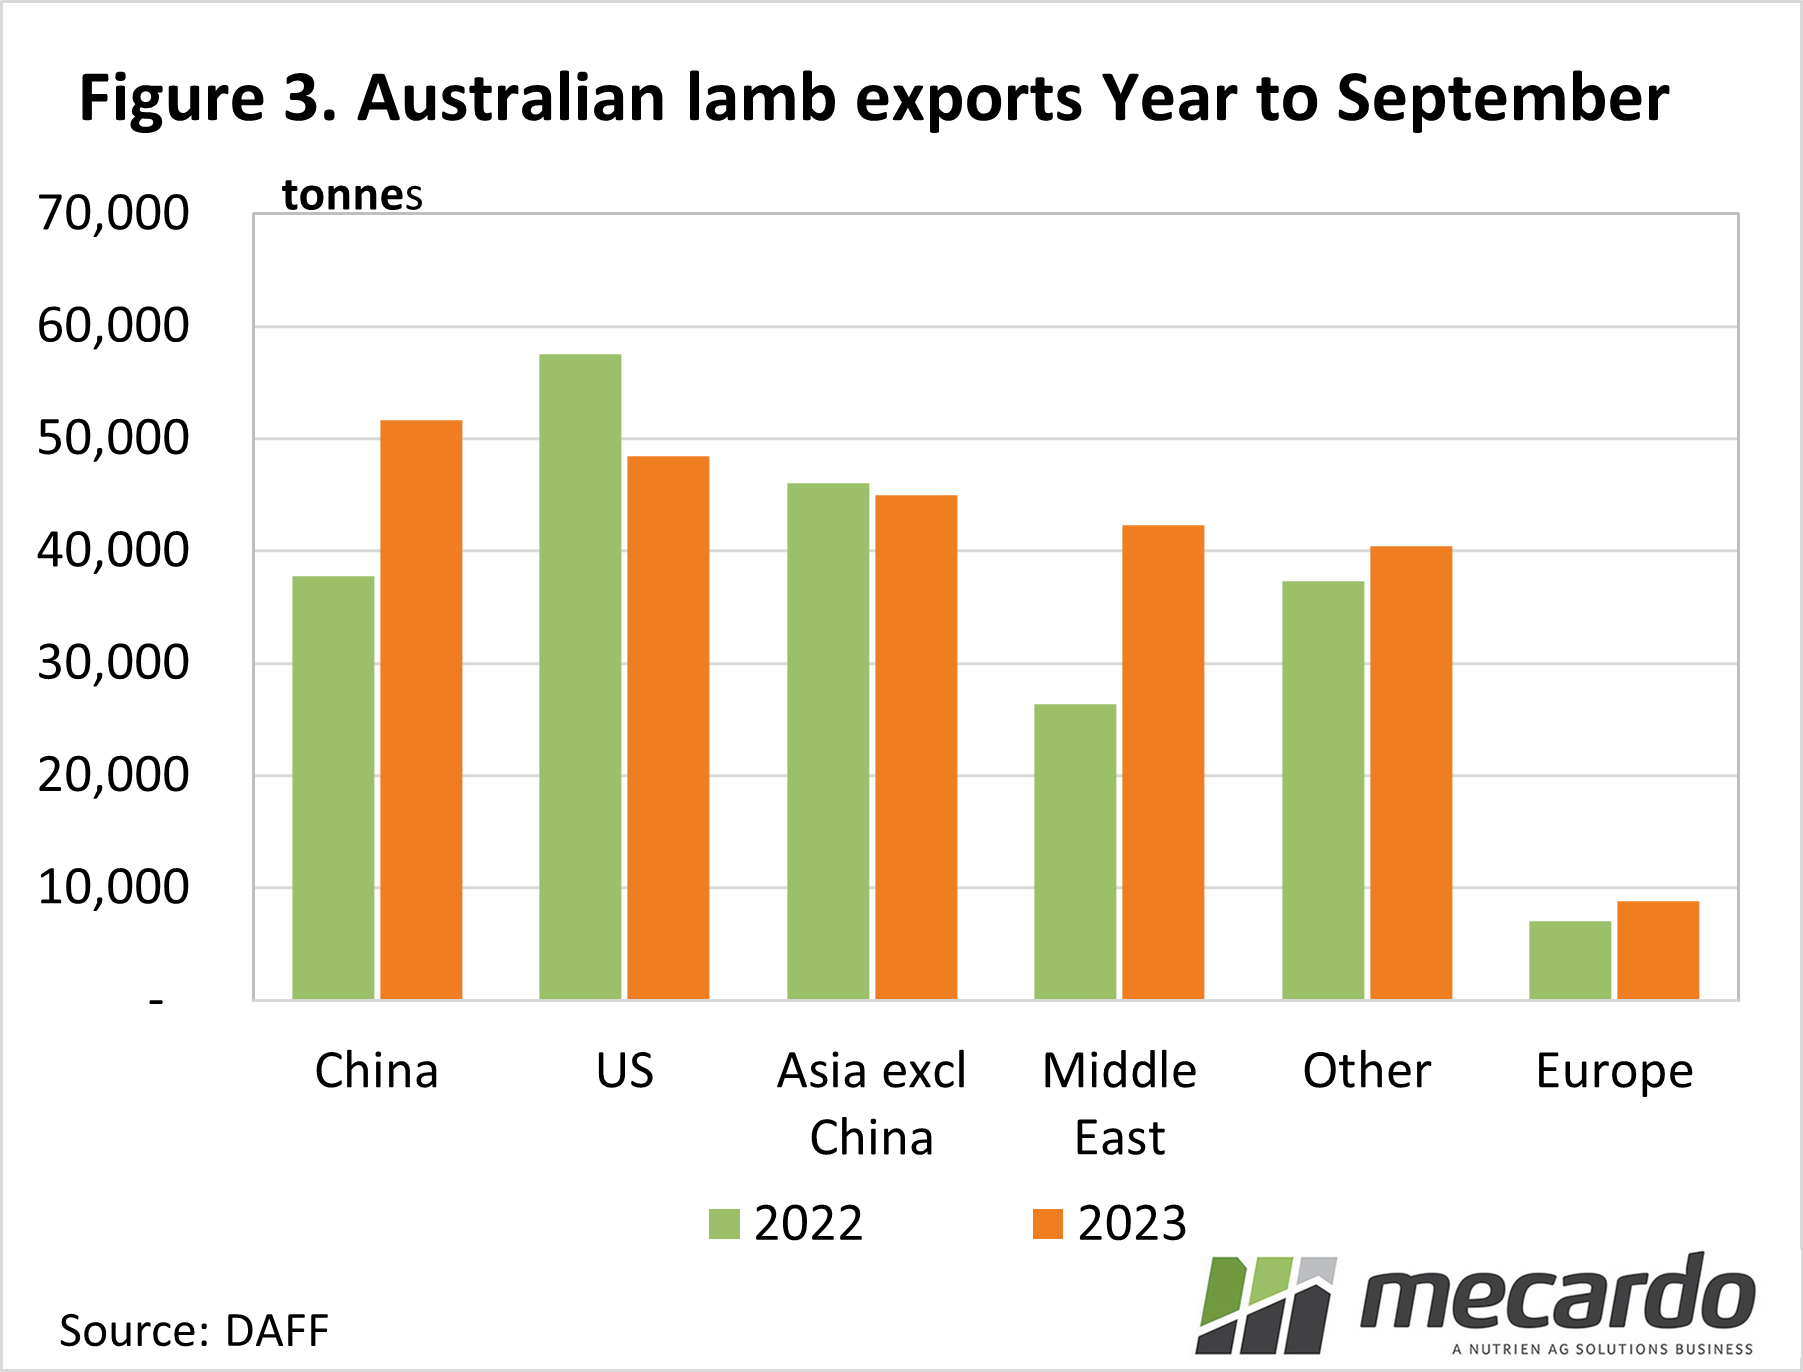 Lamb exports